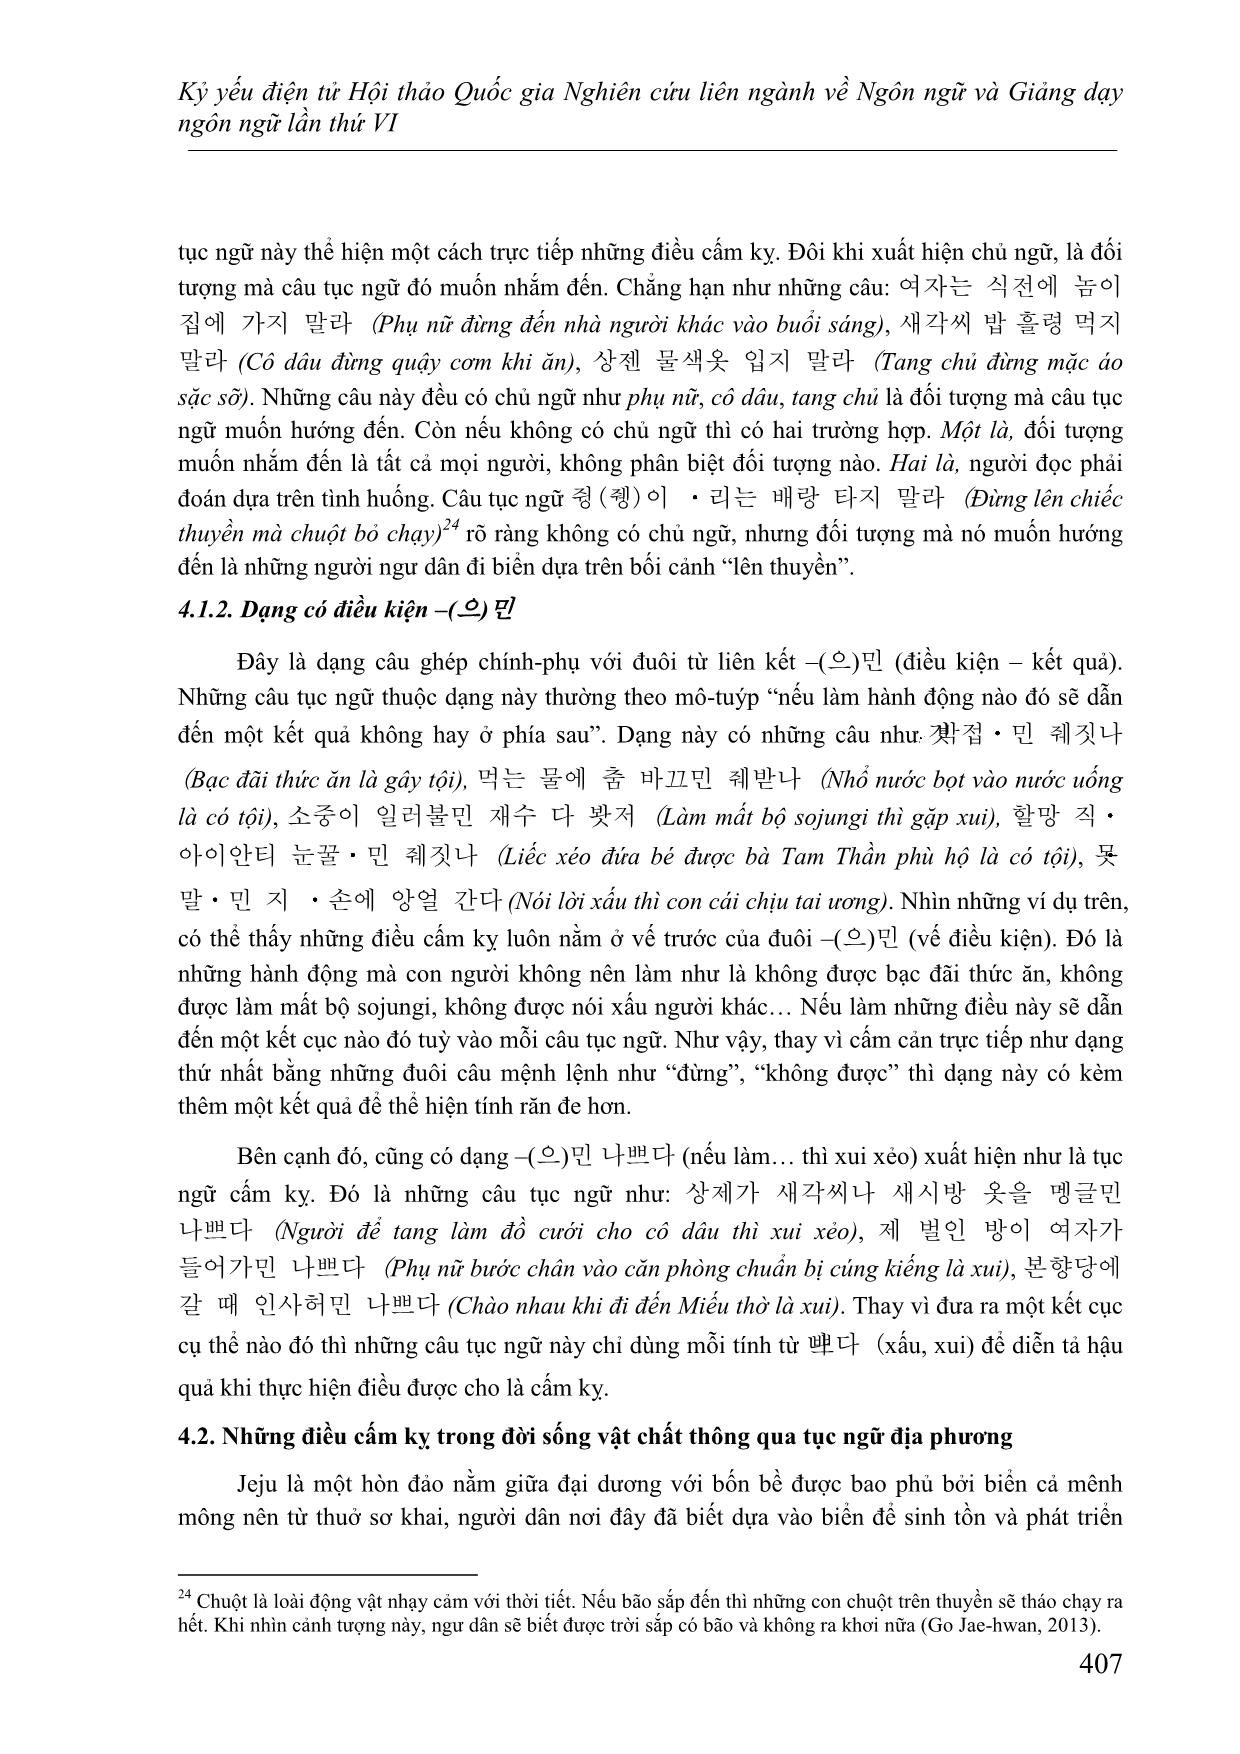 Những điều cấm kỳ trong văn hoá Jeju (Hàn Quốc) thông qua tục ngữ địa phương trang 7